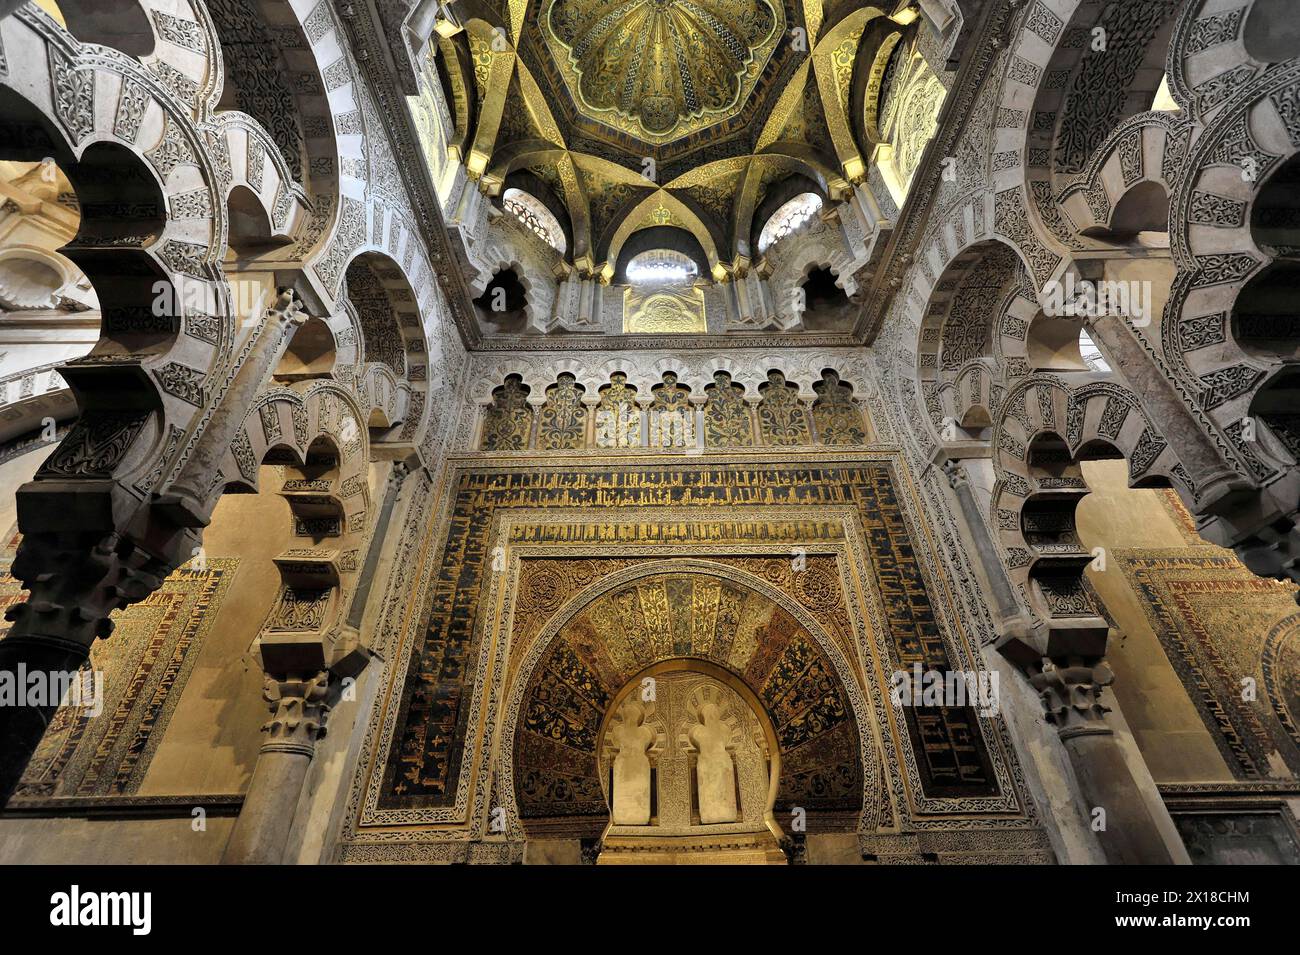 Mezquita, ehemalige Moschee, heute Kathedrale, Cordoba, goldene Deckendekorationen und Säulen zeugen von einer reichen islamischen Architekturtradition Stockfoto